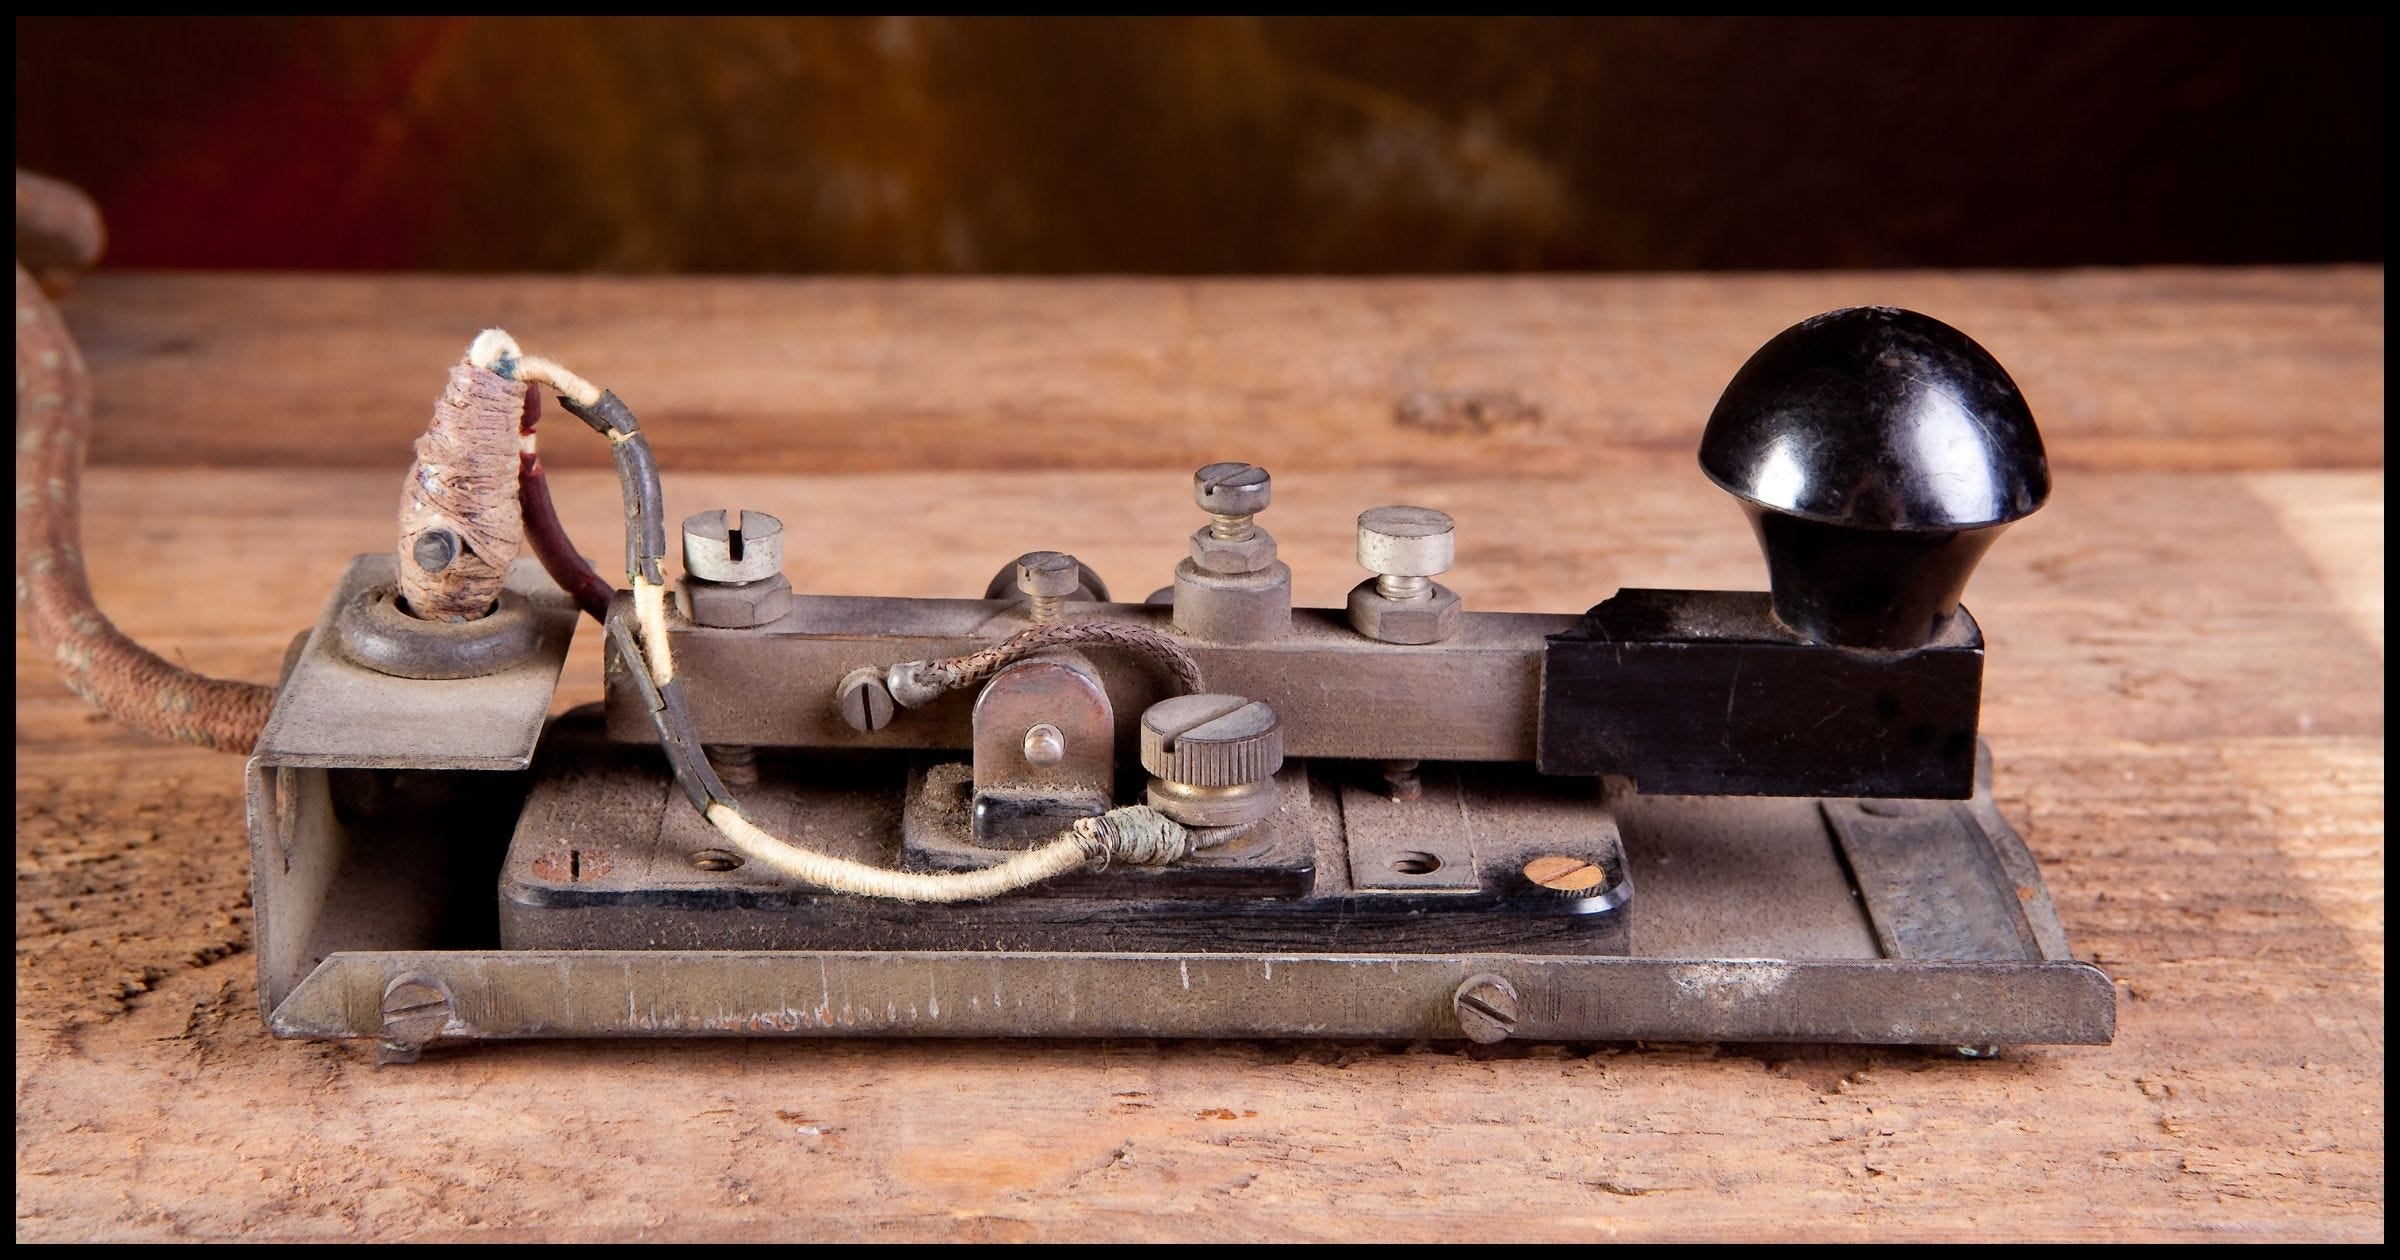 A telegraph key